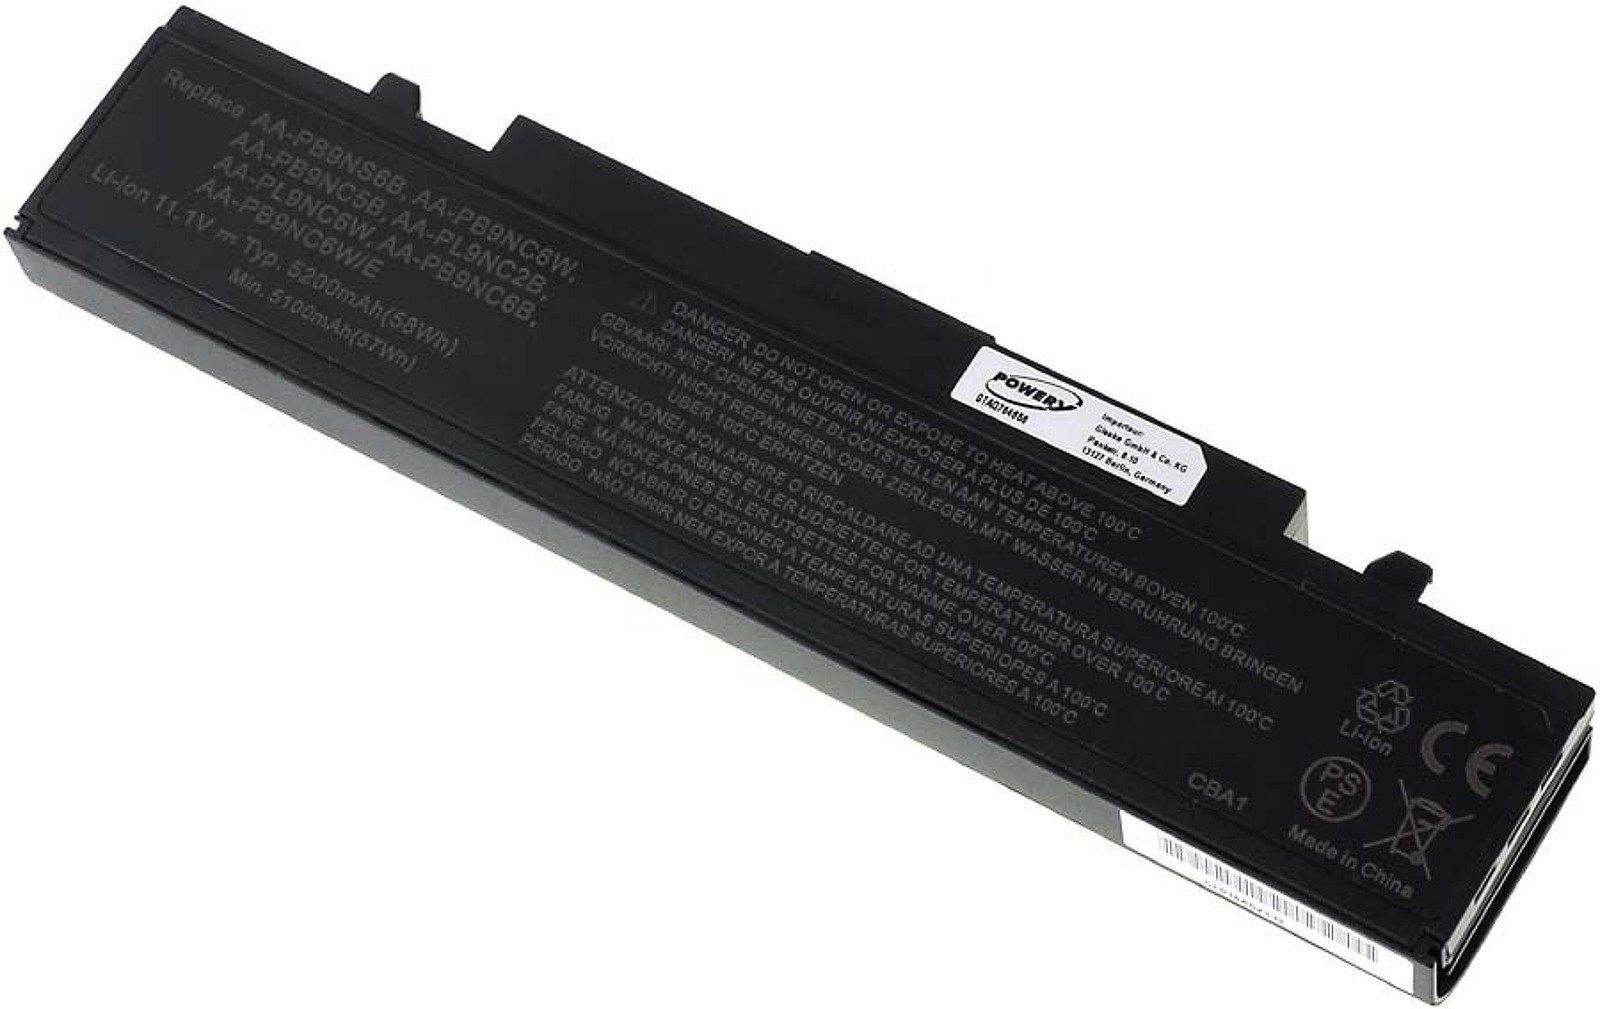 (11.1 R580 Powery Akku für 5200 mAh Samsung Laptop-Akku V)